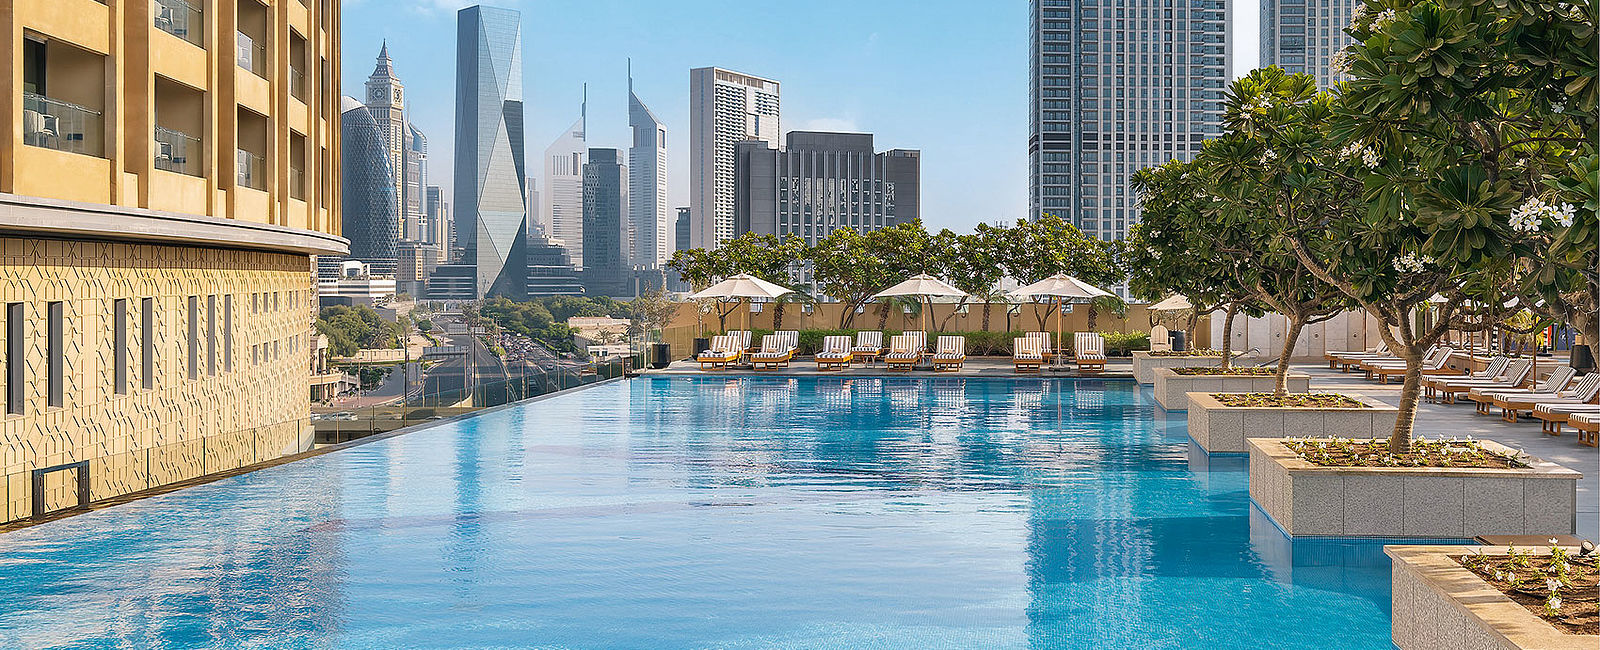 HOTEL NEWS
 Neues Doppel für Dubai 
